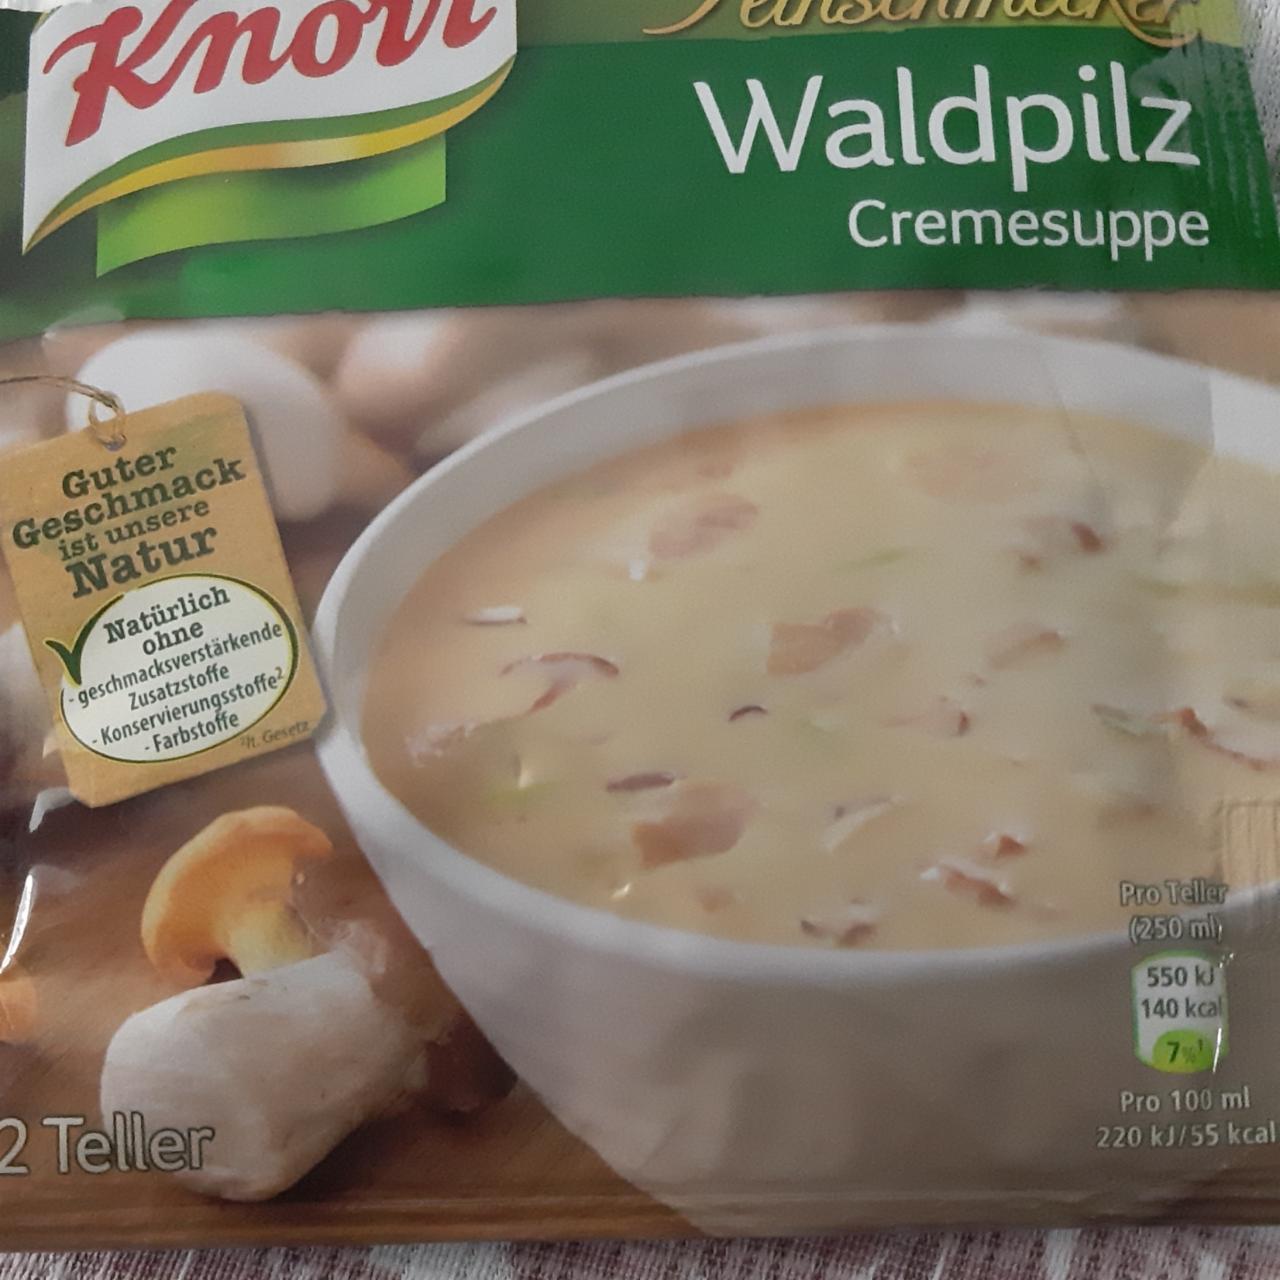 Фото - кремовый грибной суп сублимированный Knorr